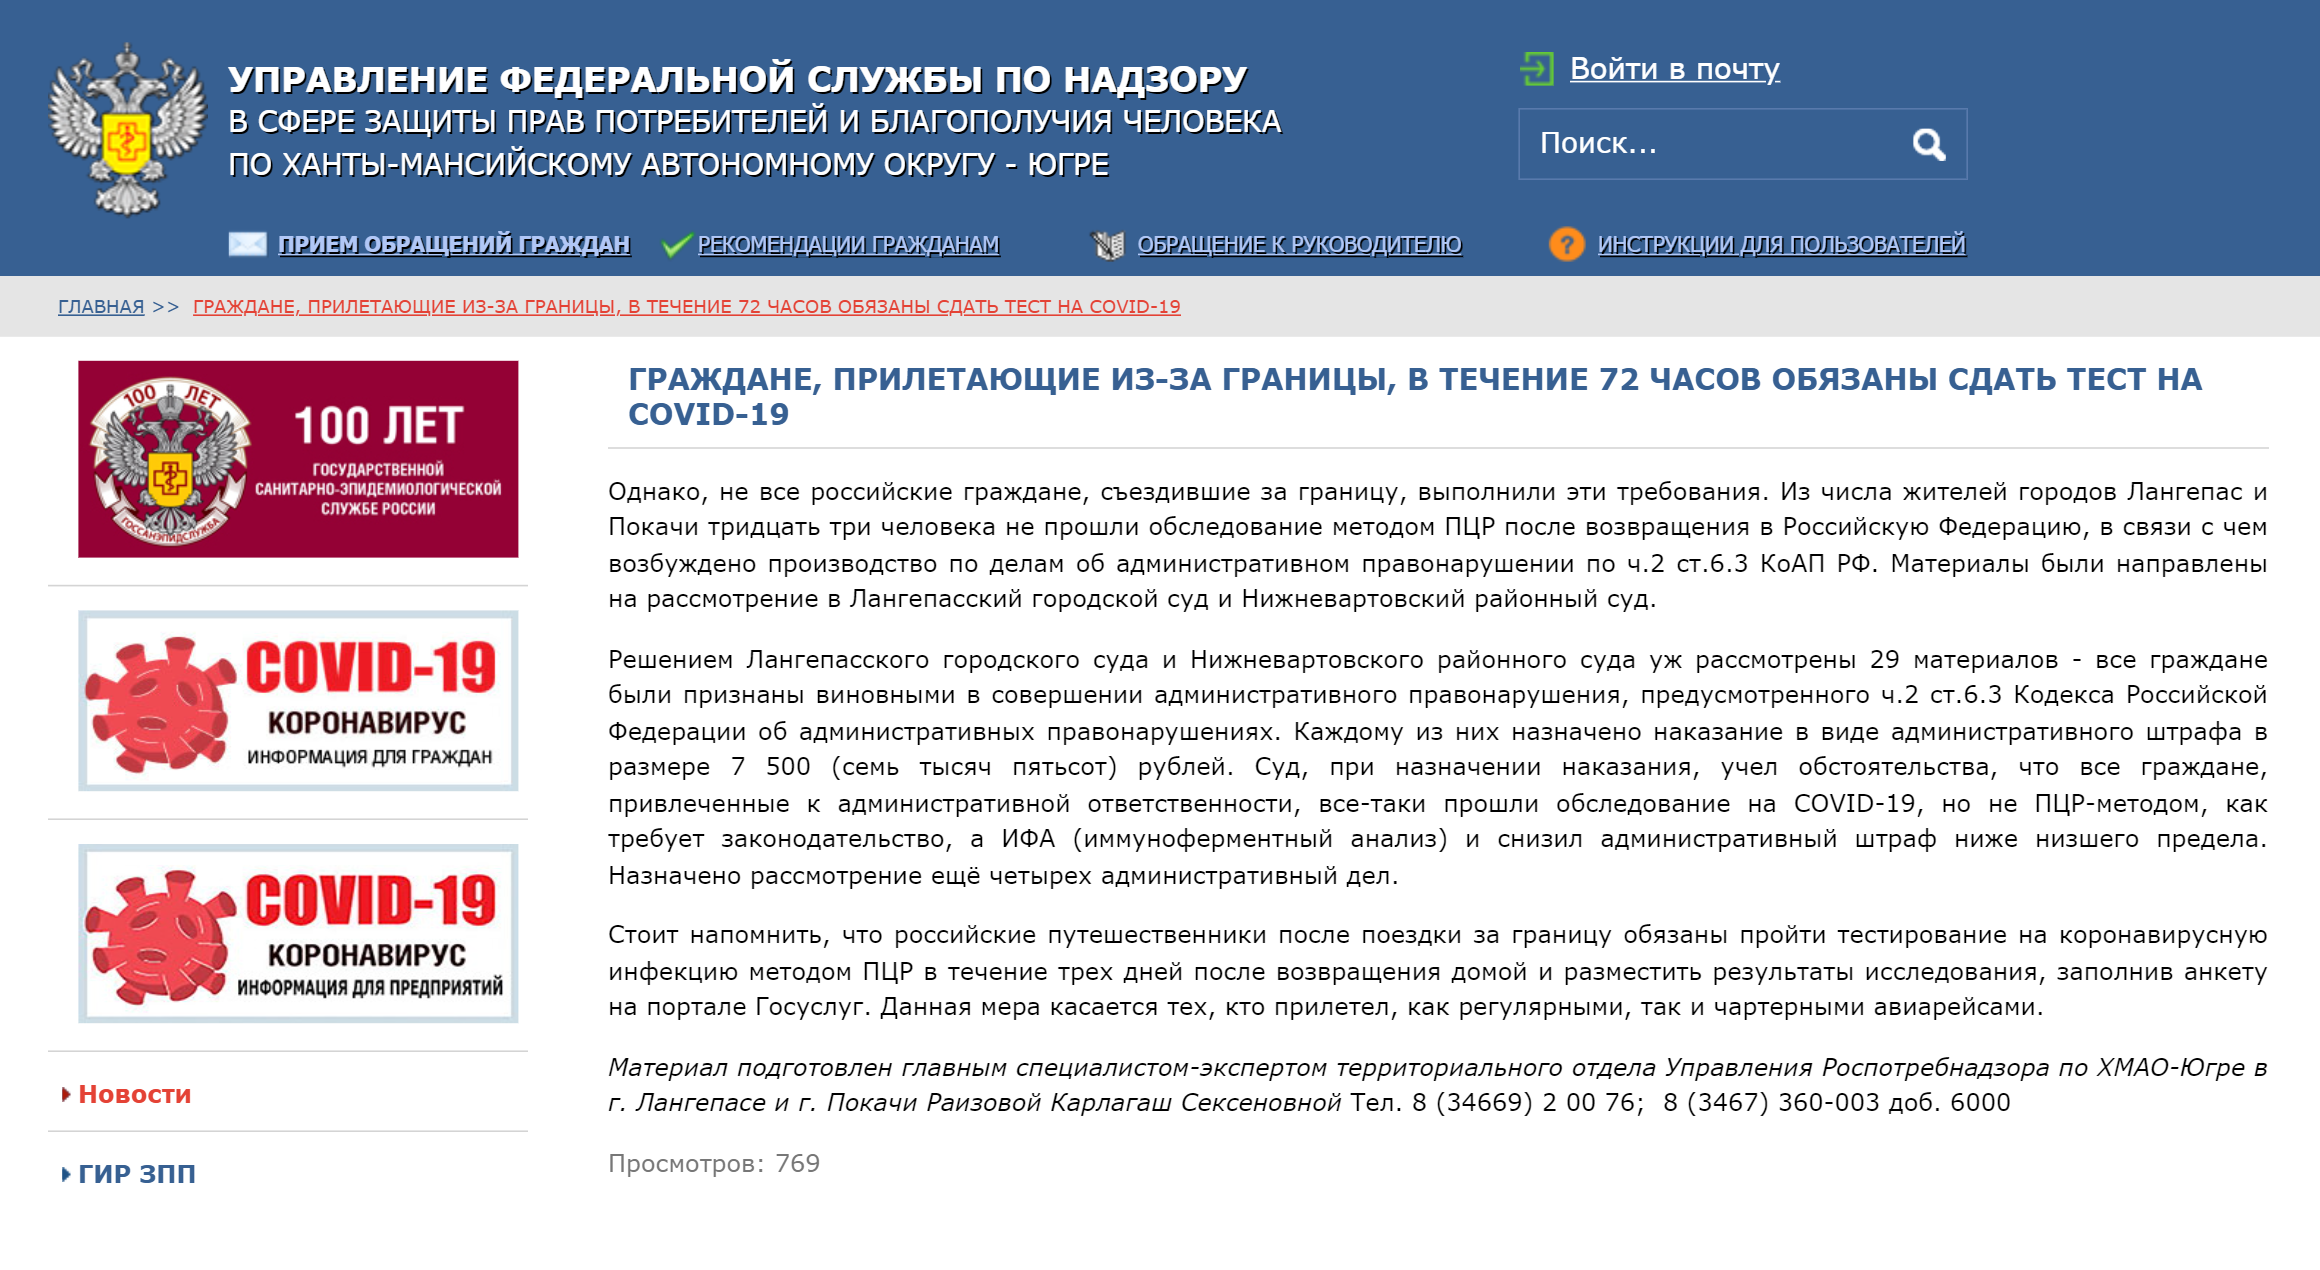 Пресс-релиз на сайте управления Роспотребнадзора по ХМАО